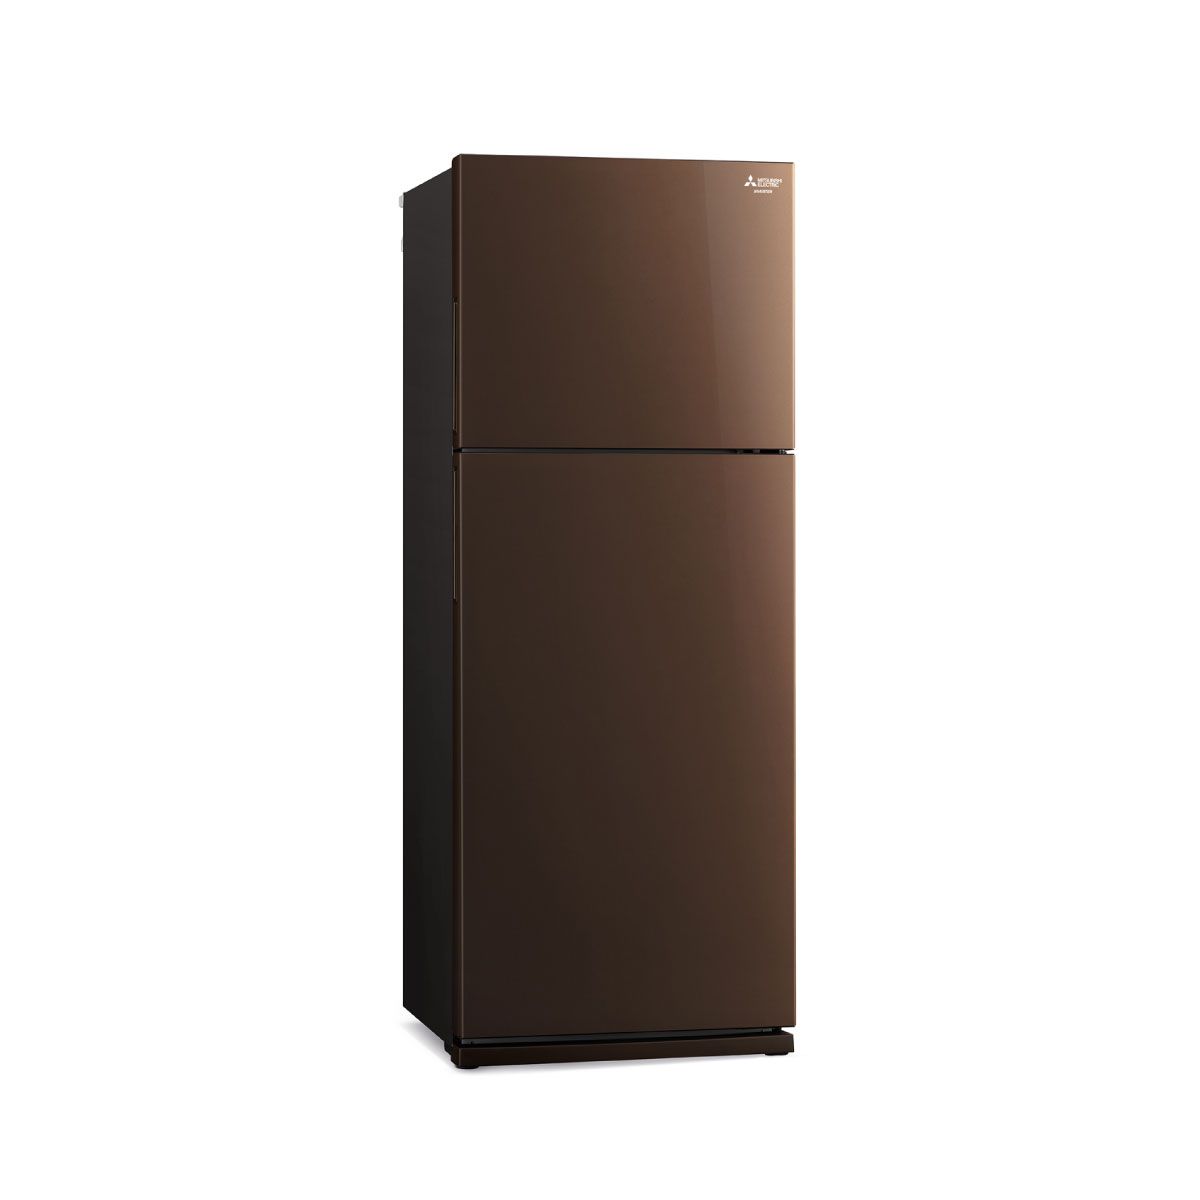 MITSUBISHI ELECTRIC ตู้เย็น 2 ประตู 14.6 คิว  INVERTER  สีน้ำตาลคอปเปอร์ รุ่น MR-FS45ES